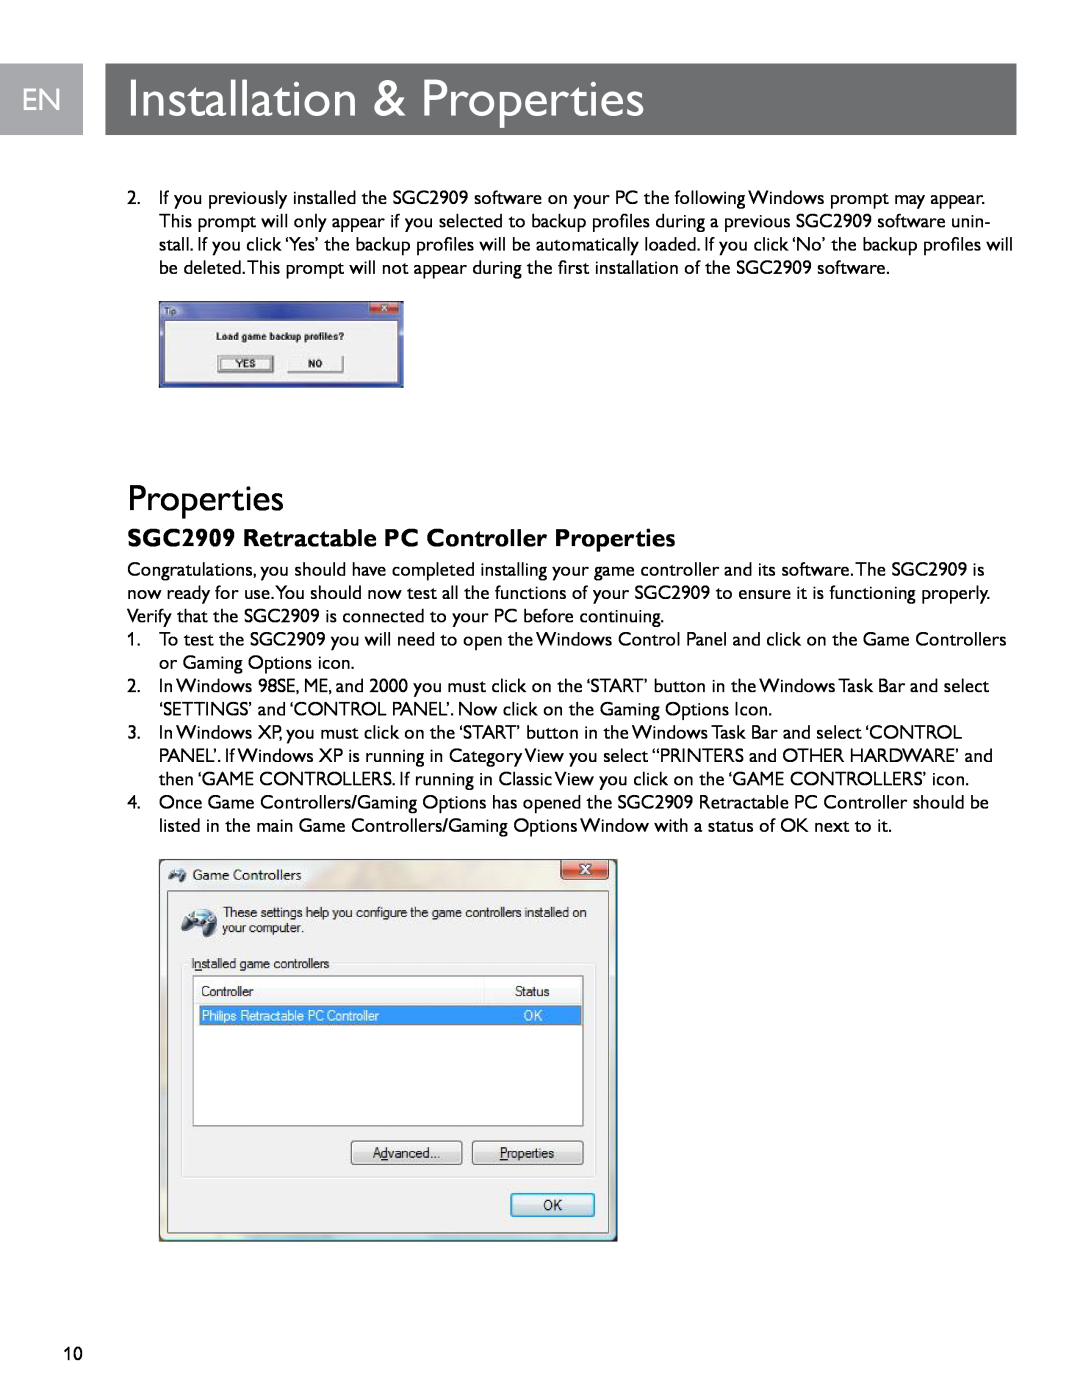 Philips user manual EN Installation & Properties, SGC2909 Retractable PC Controller Properties 